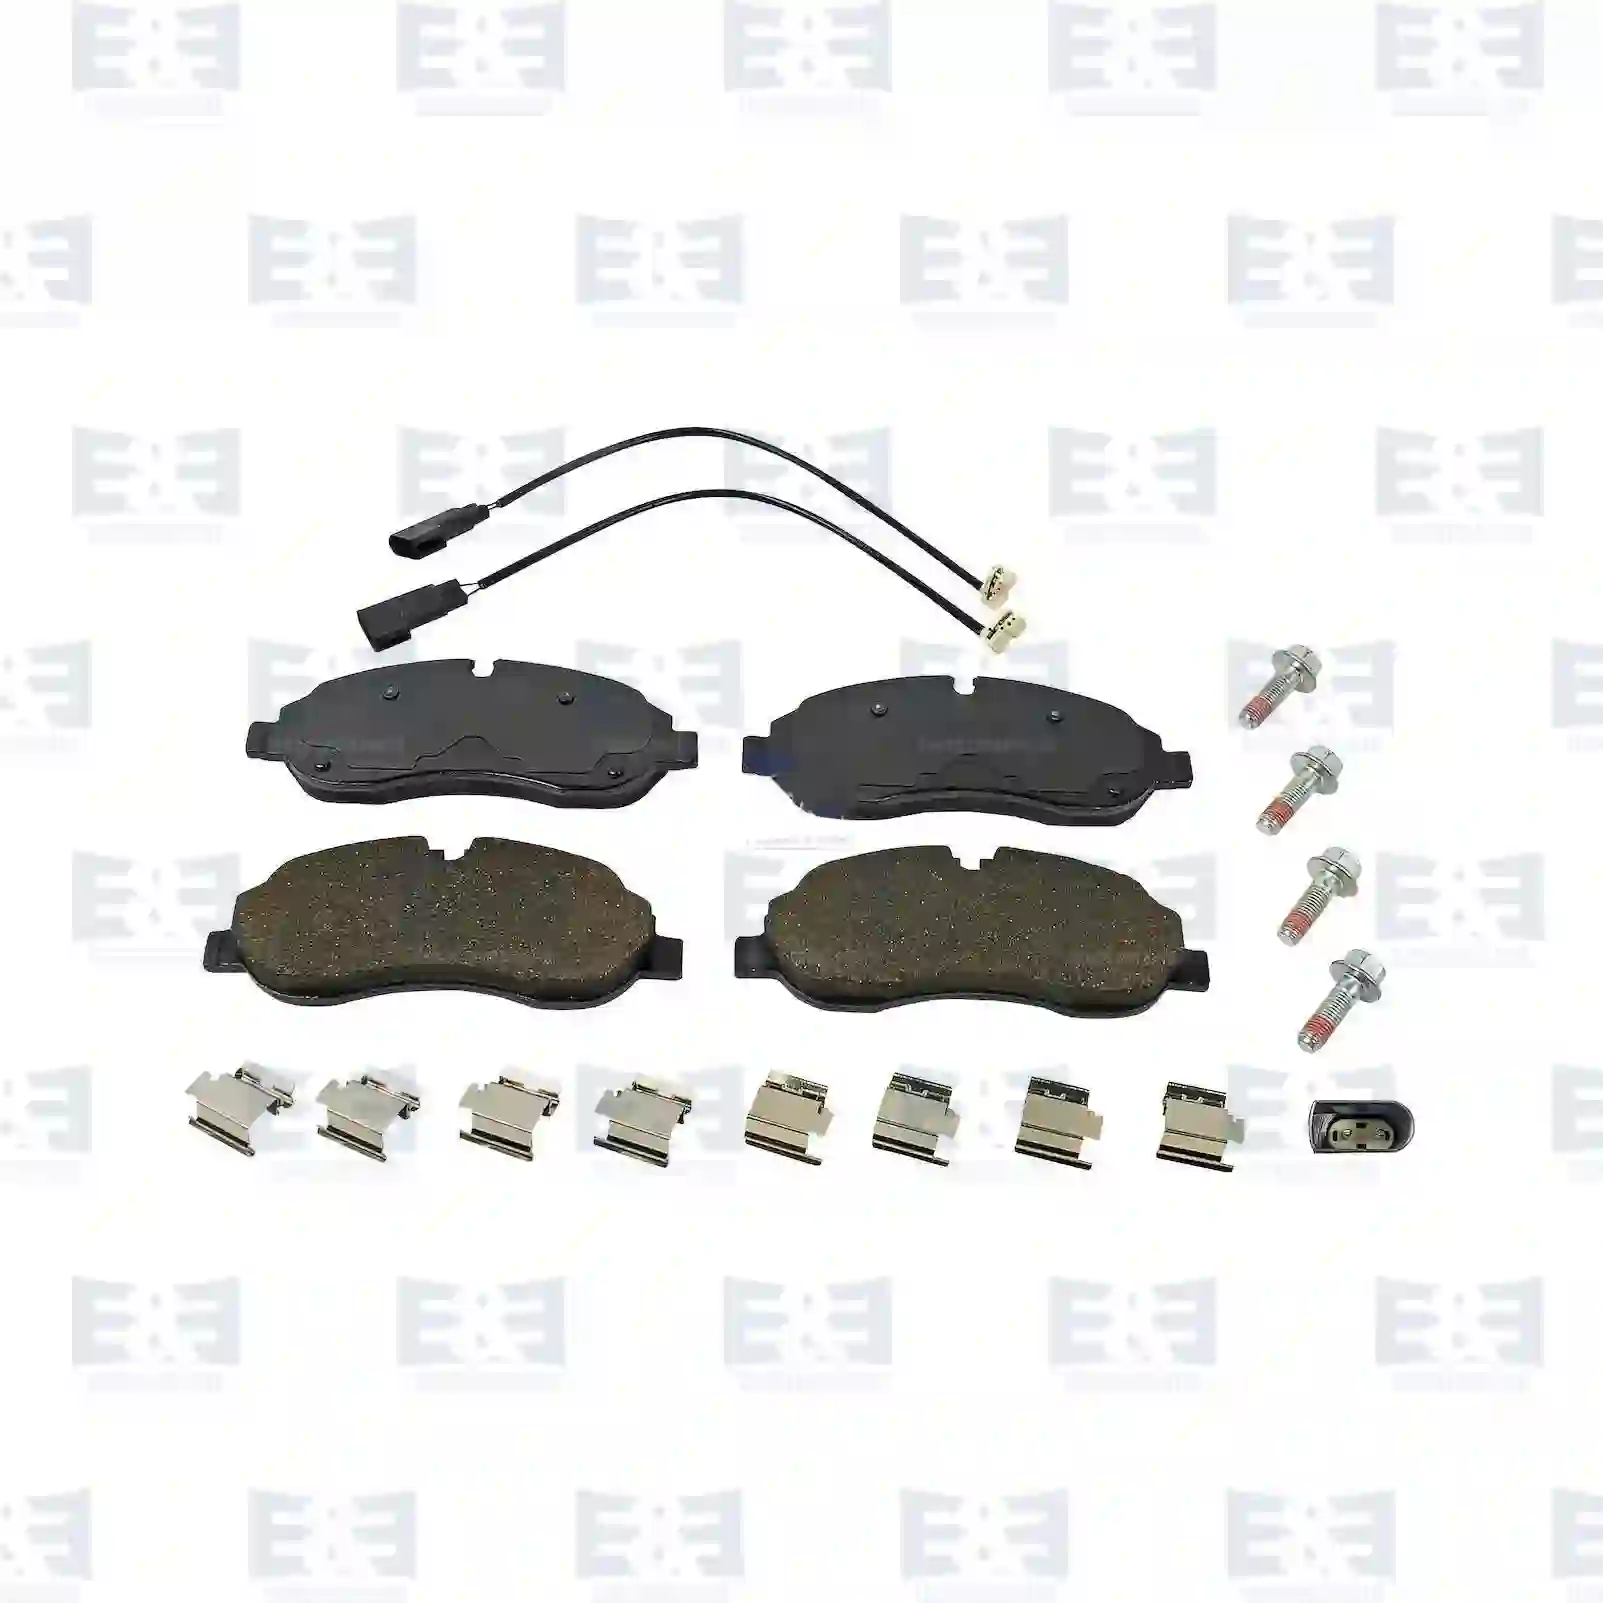 Disc brake pad kit, with wear indicators, 2E2297431, 1763915, 1842632, 1916326, BK21-2K021-AA, BK21-2K021-AB, MEBK2J-2K021-AA ||  2E2297431 E&E Truck Spare Parts | Truck Spare Parts, Auotomotive Spare Parts Disc brake pad kit, with wear indicators, 2E2297431, 1763915, 1842632, 1916326, BK21-2K021-AA, BK21-2K021-AB, MEBK2J-2K021-AA ||  2E2297431 E&E Truck Spare Parts | Truck Spare Parts, Auotomotive Spare Parts